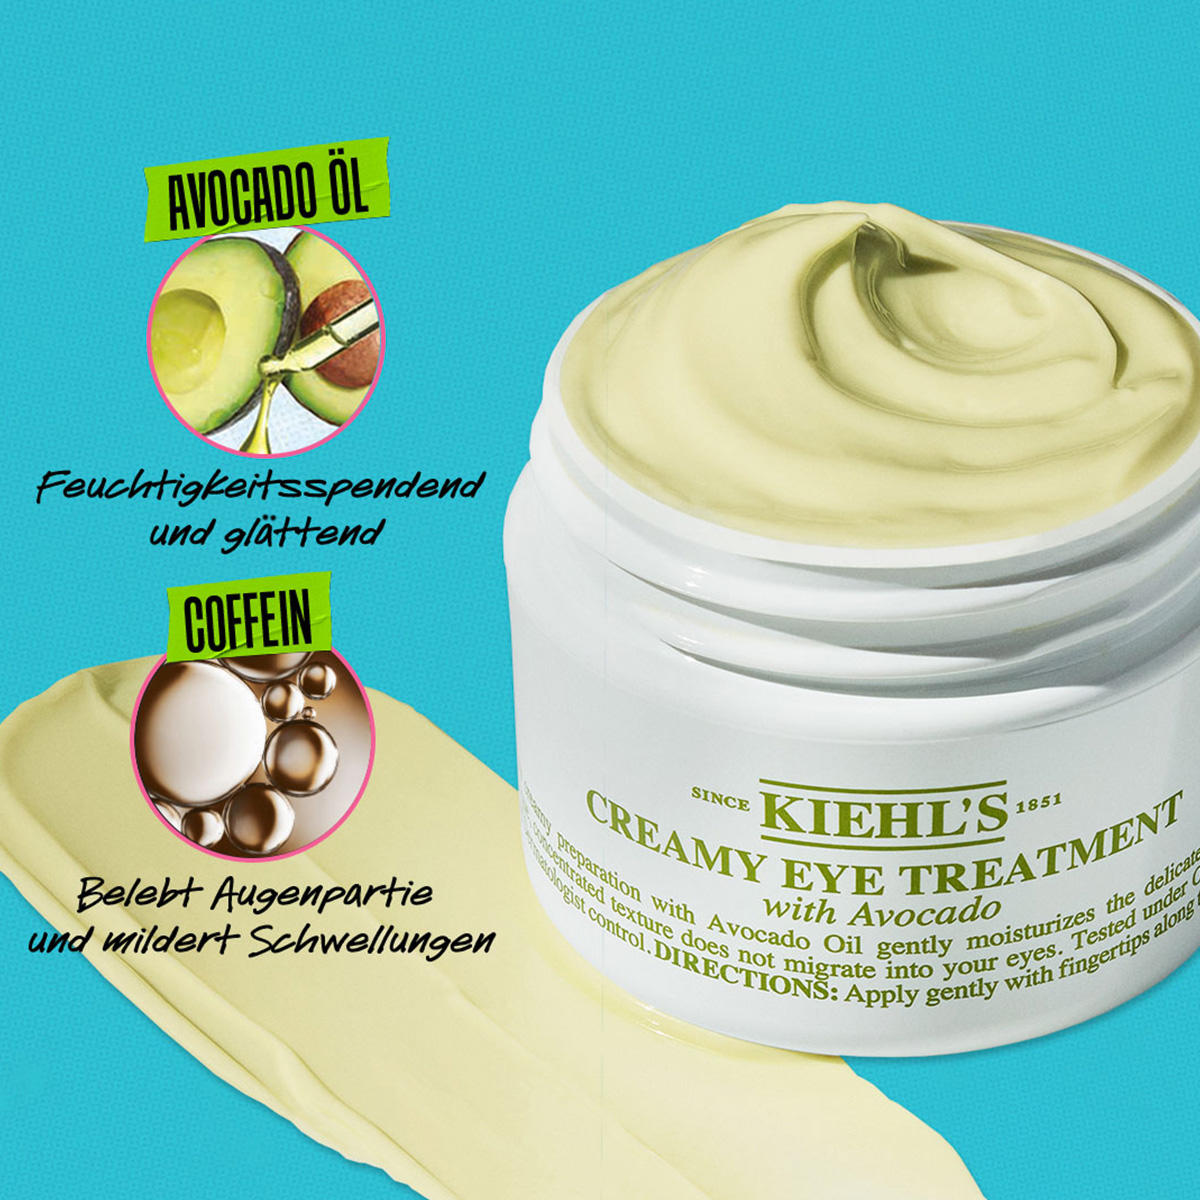 Kiehl's Creamy Eye Treatment with Avocado 14 ml - 3